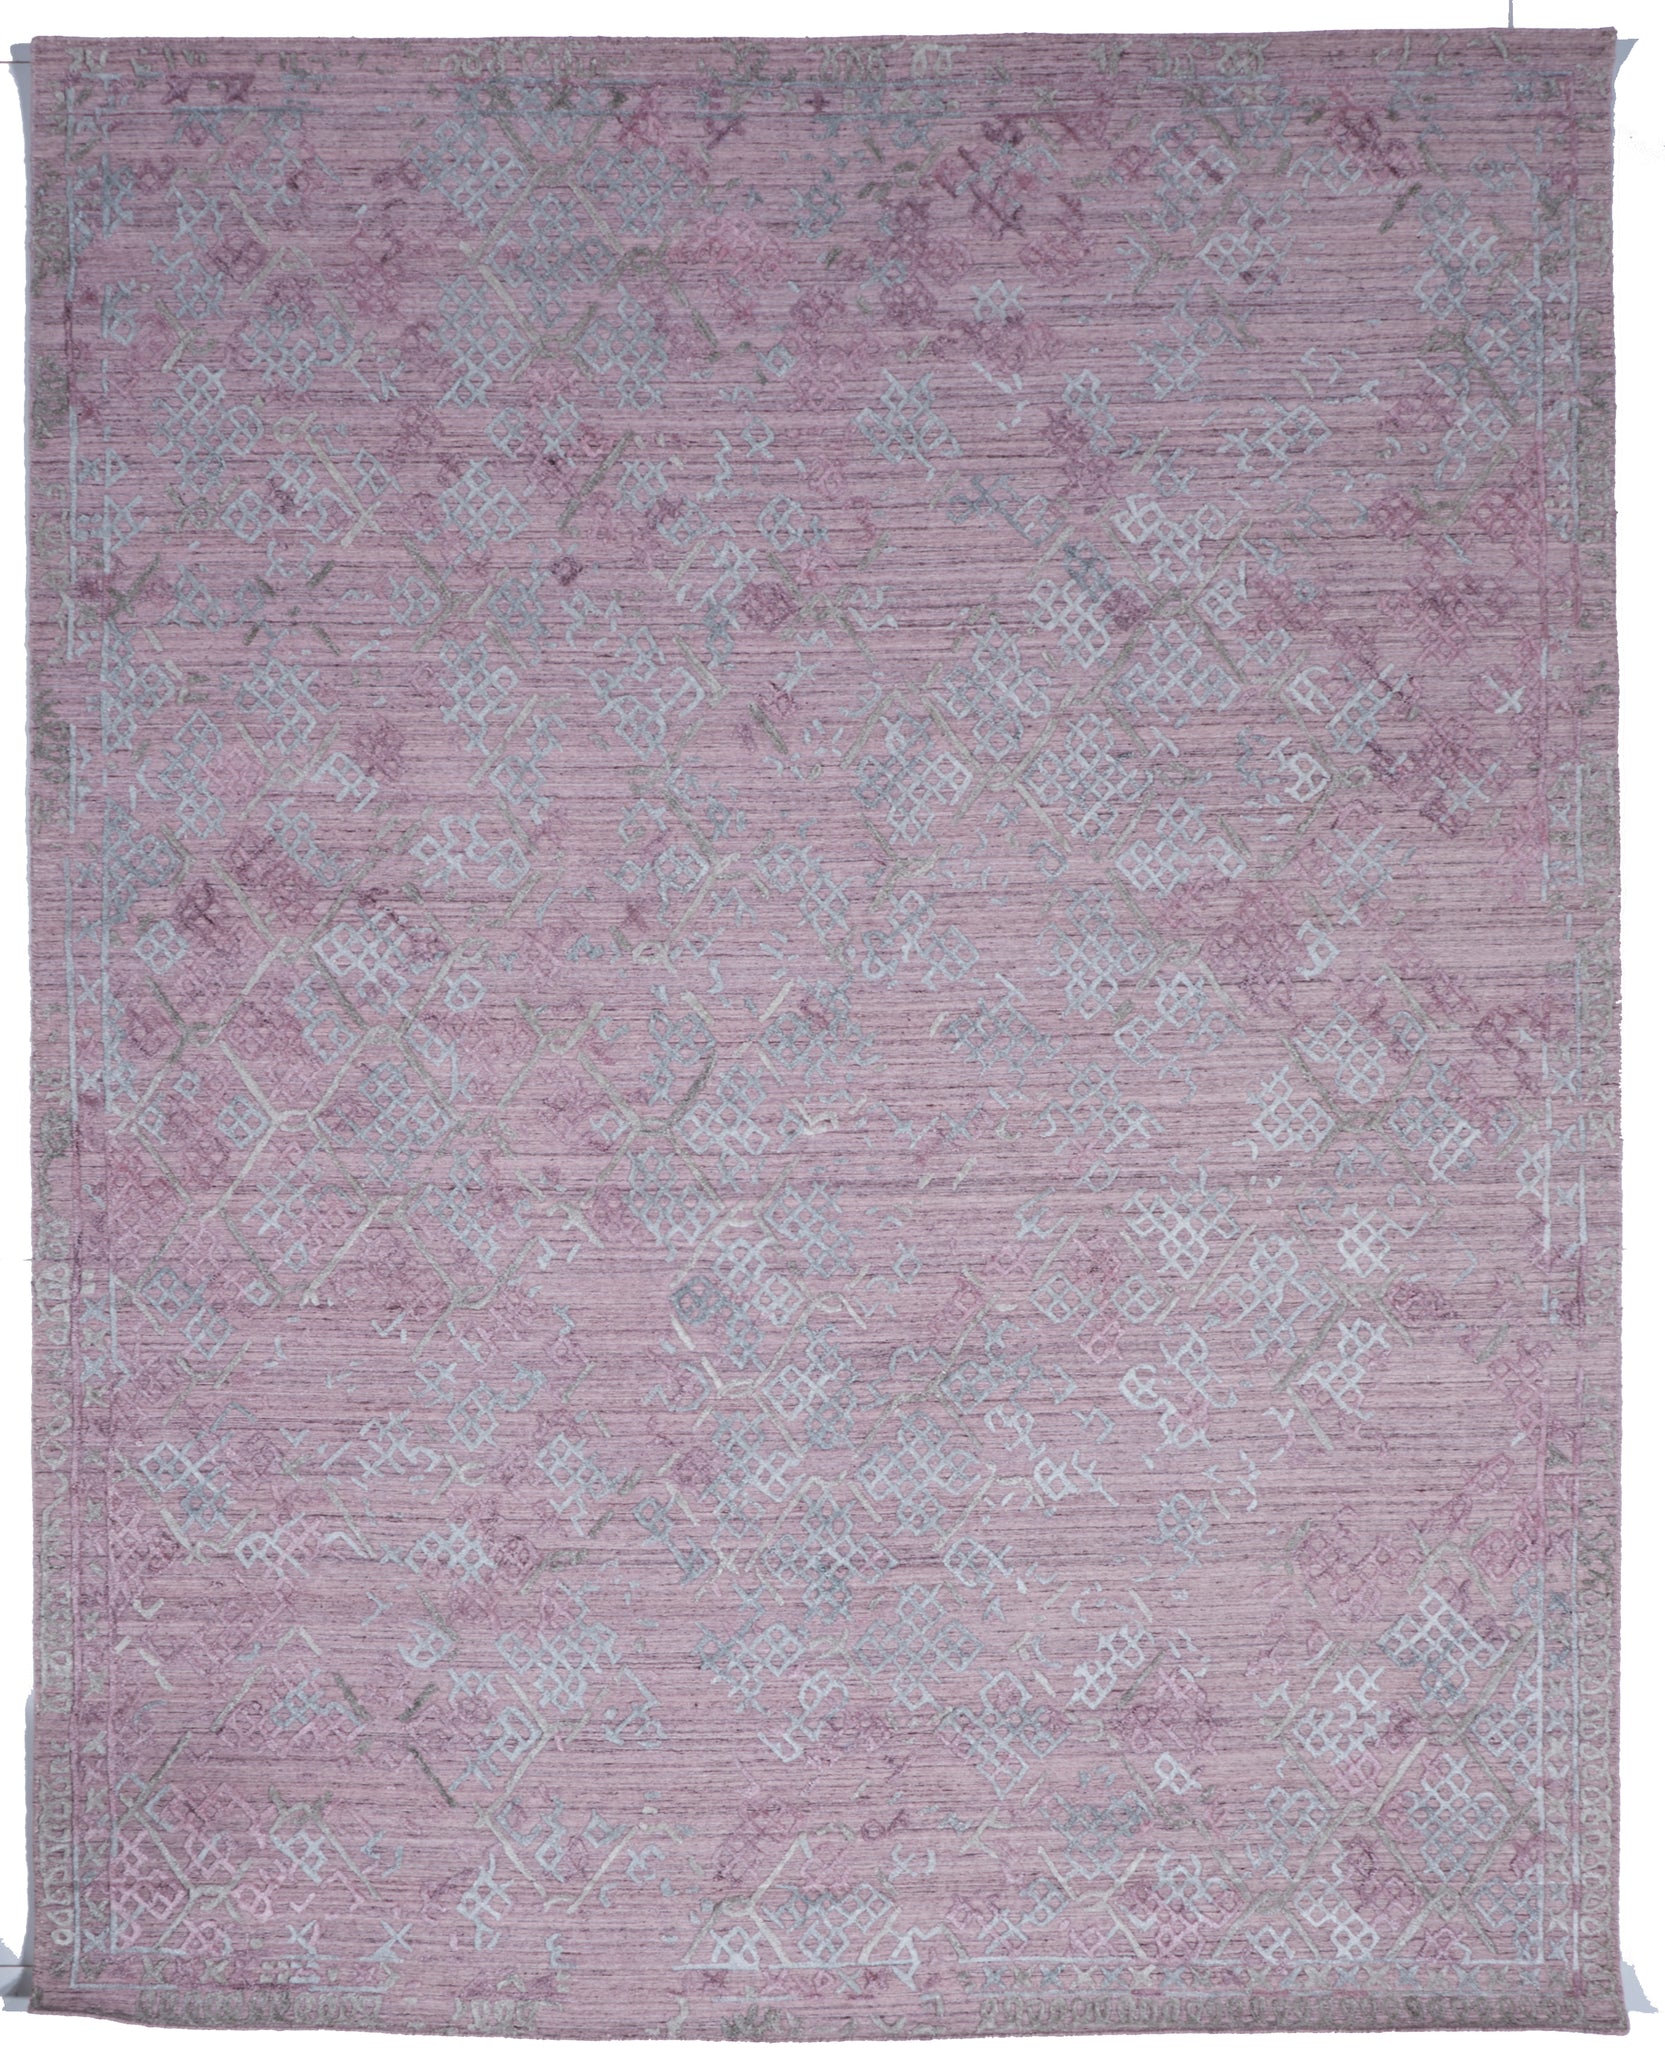 Transitional Hand Loomed Pink Wool/Art Silk Rug 7'11 x 10'1 - IGotYourRug